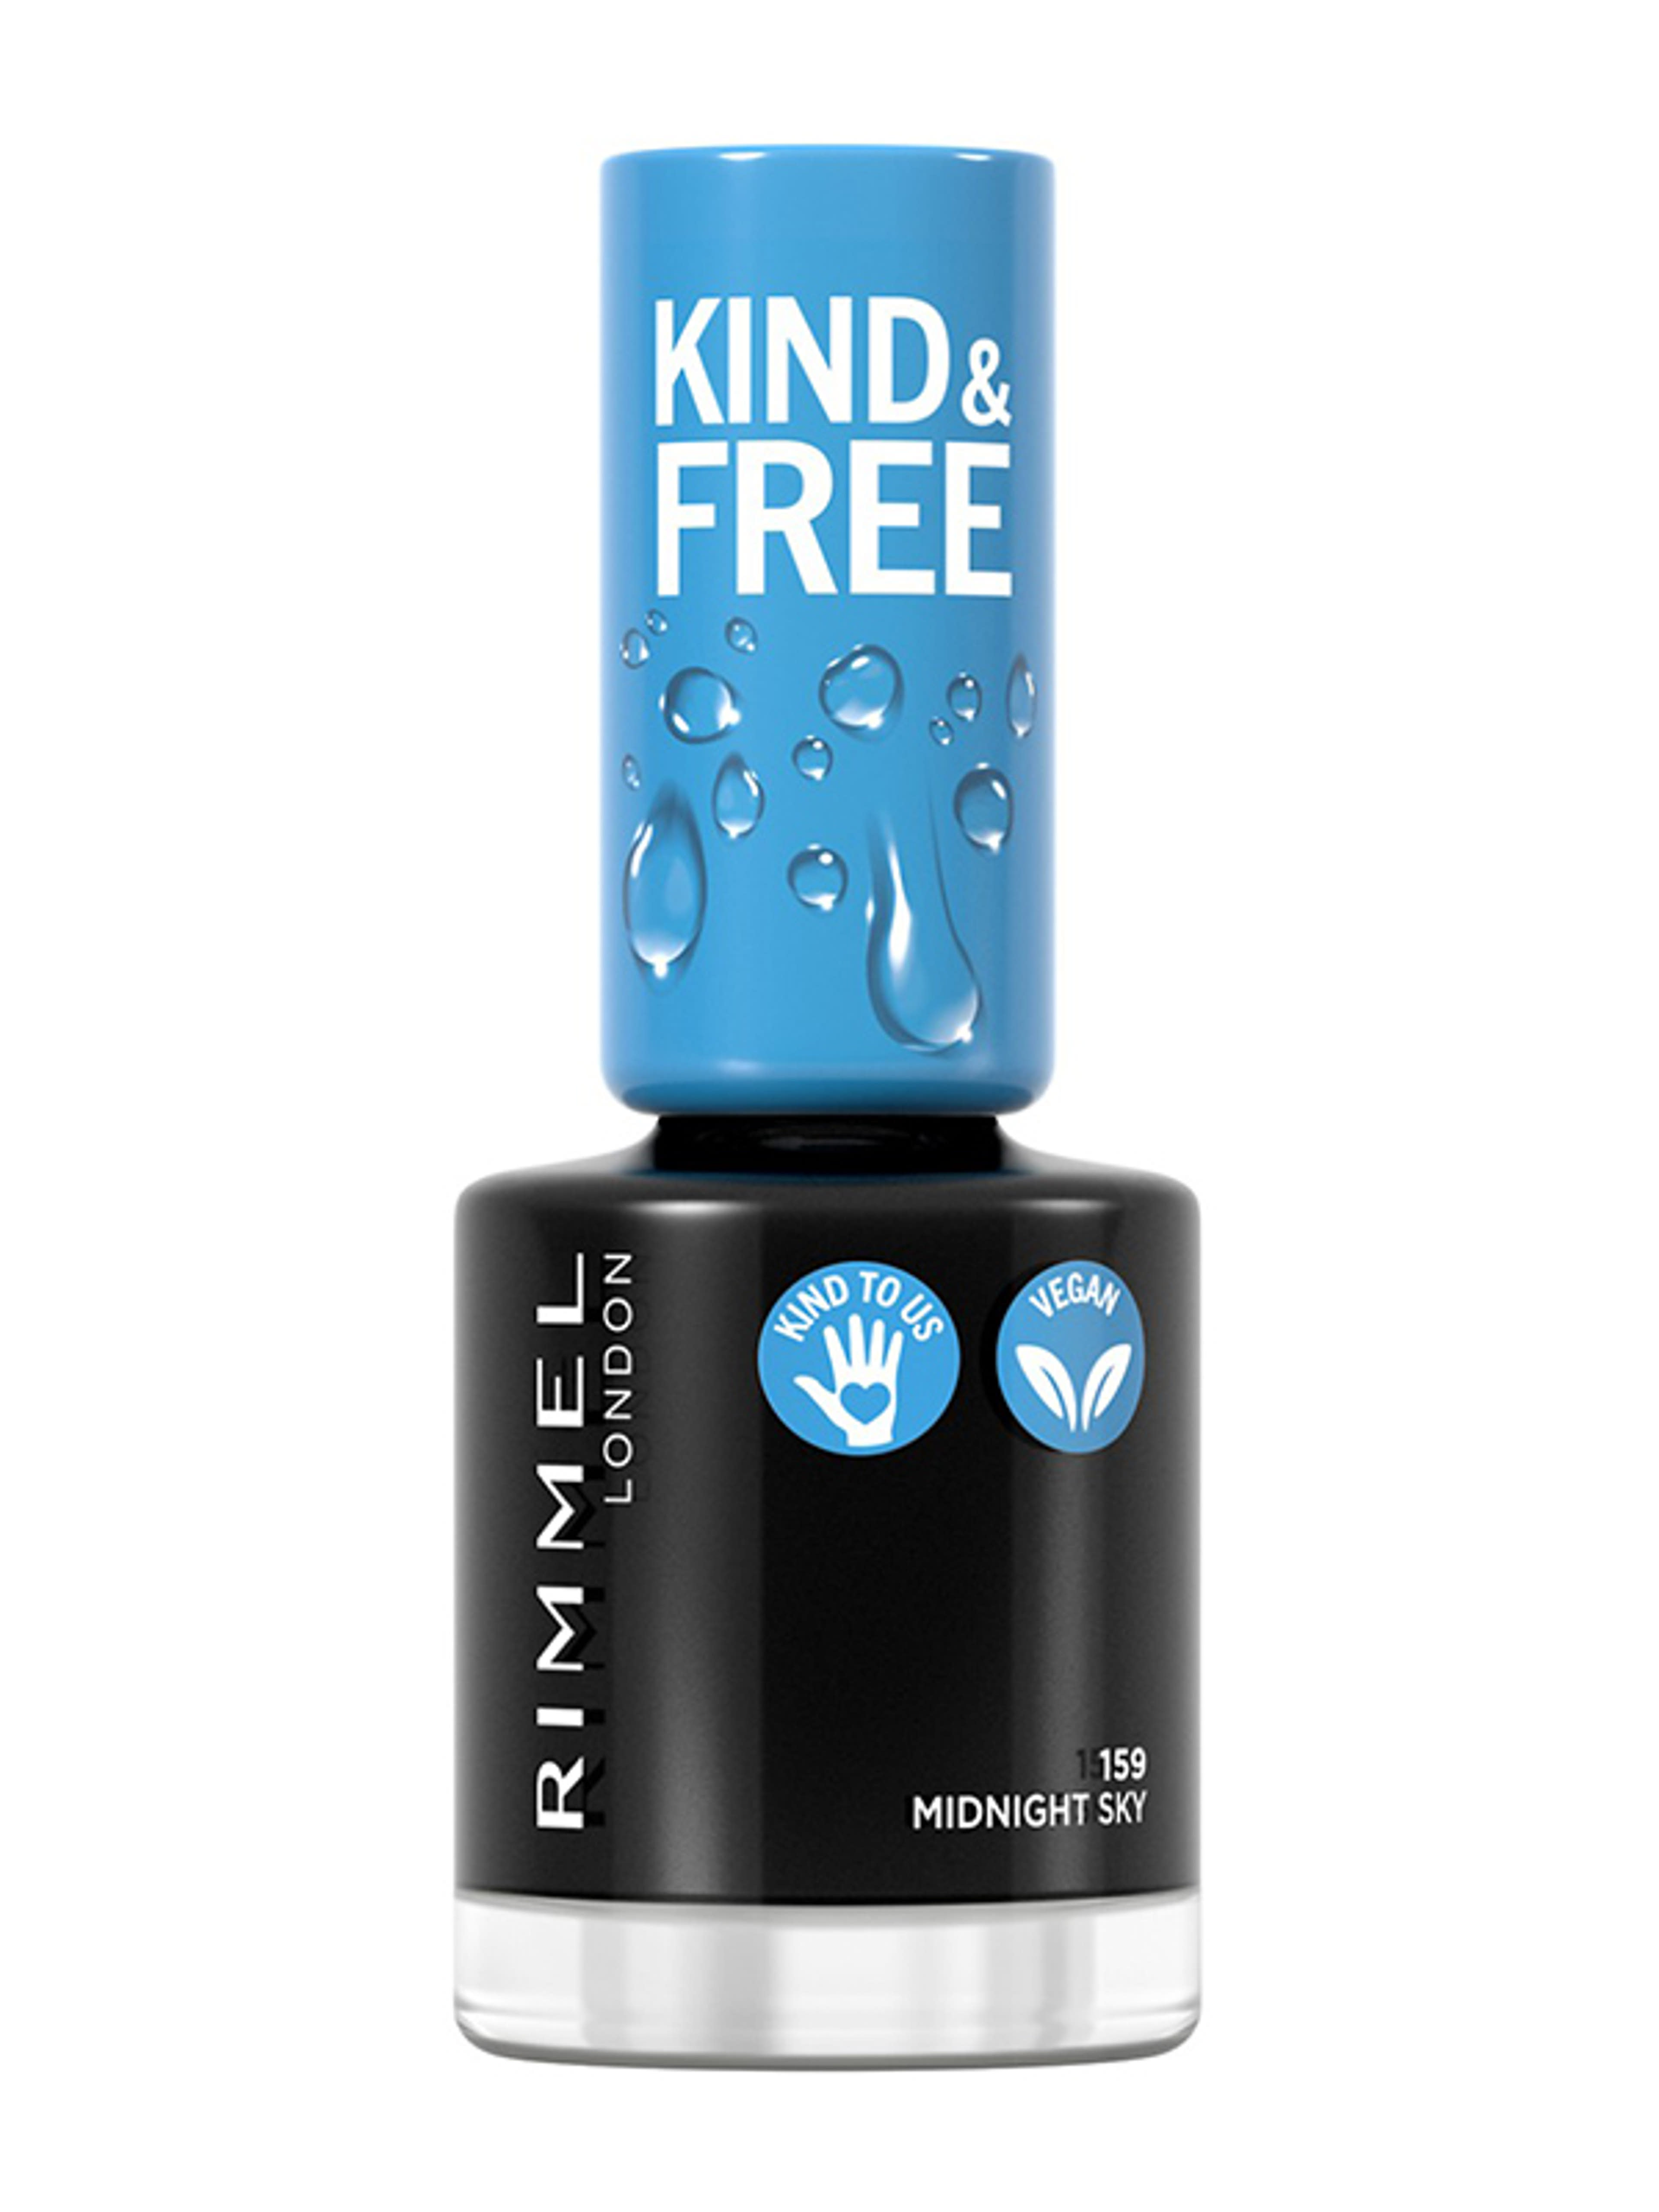 Rimmel Kind & Free körömlakk /159 - 1 db-1